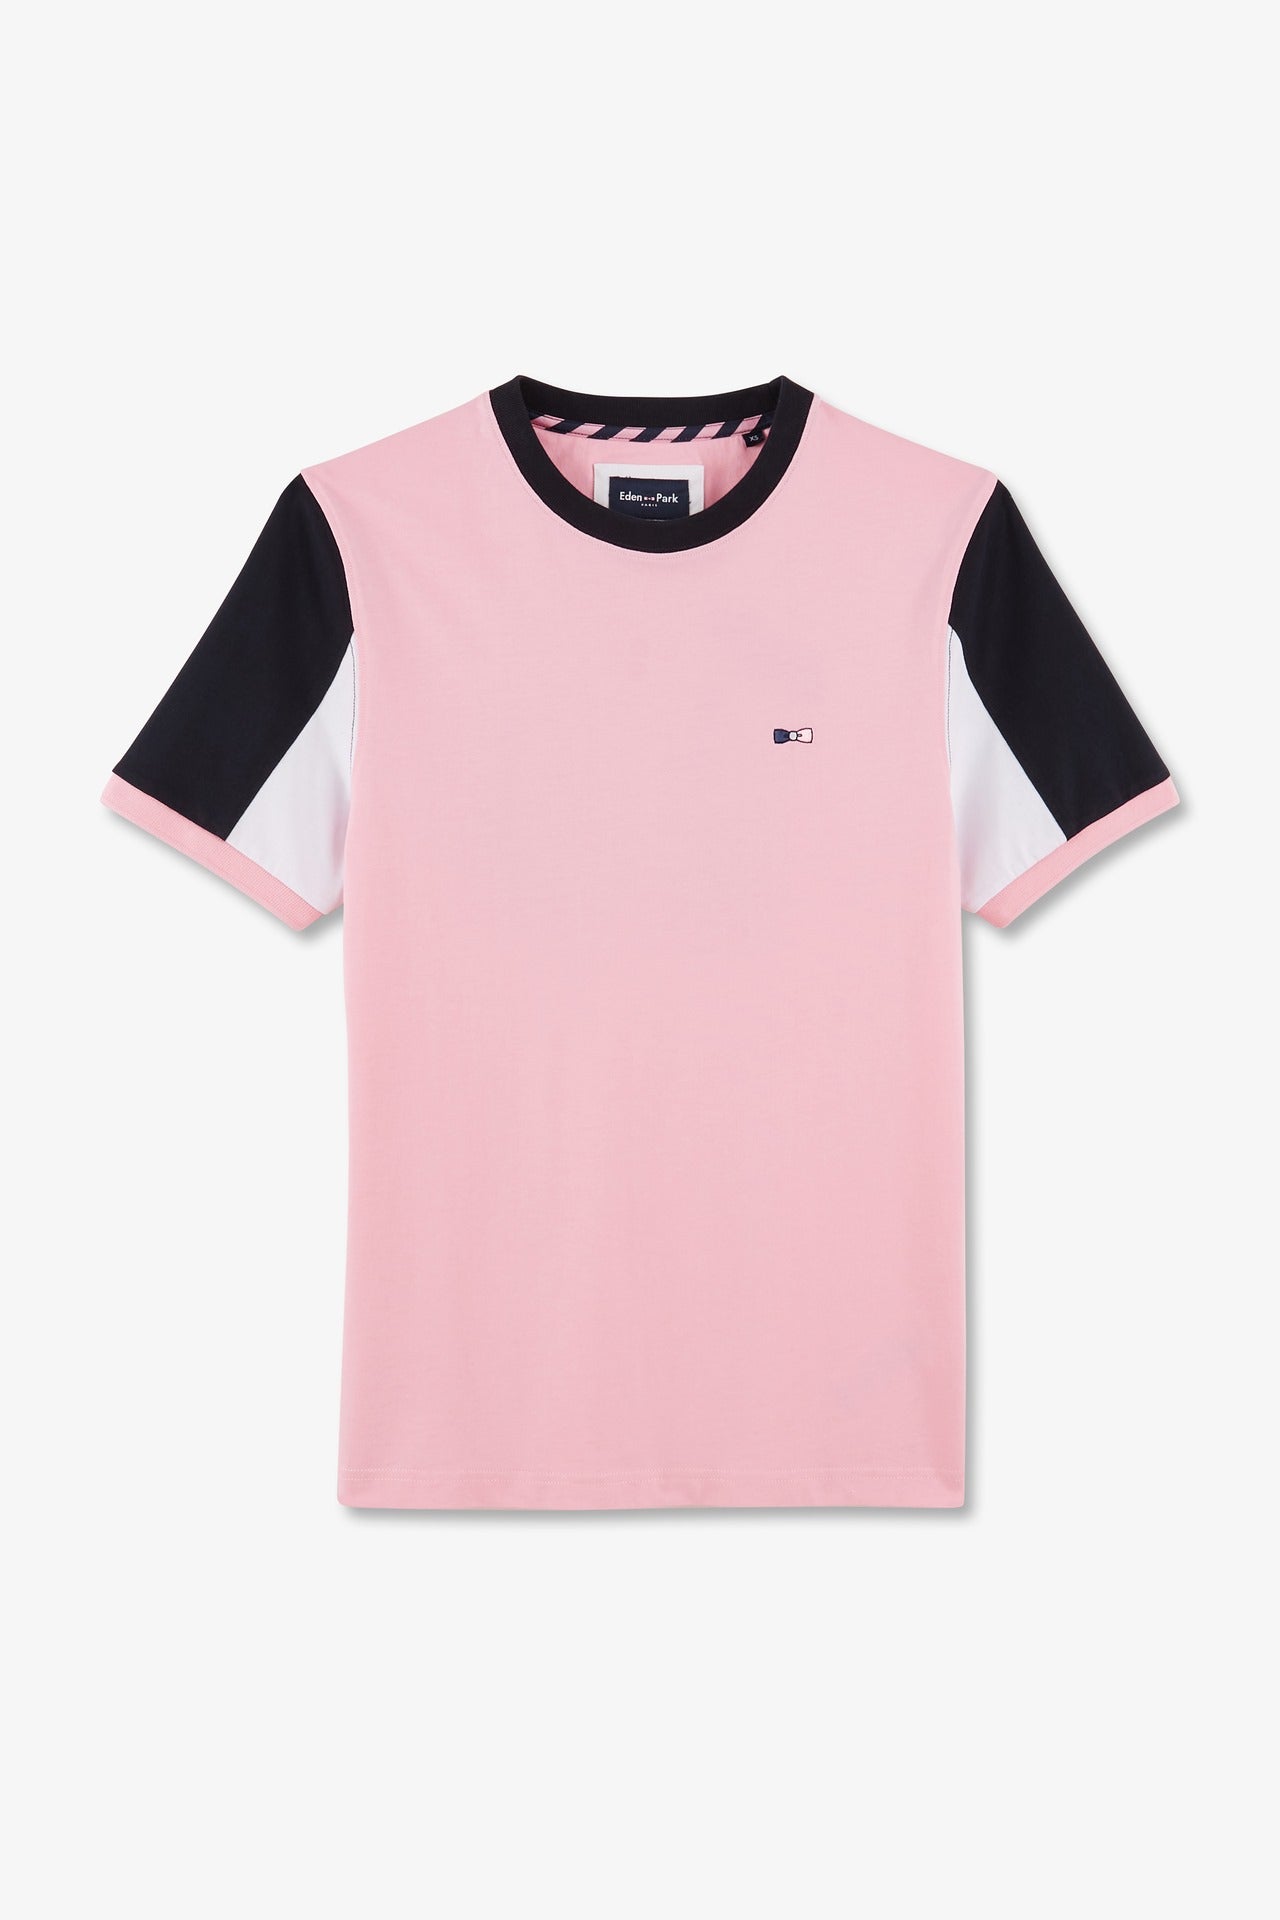 T-shirt manches courtes rose en coton broderie numéro 10 - Image 2